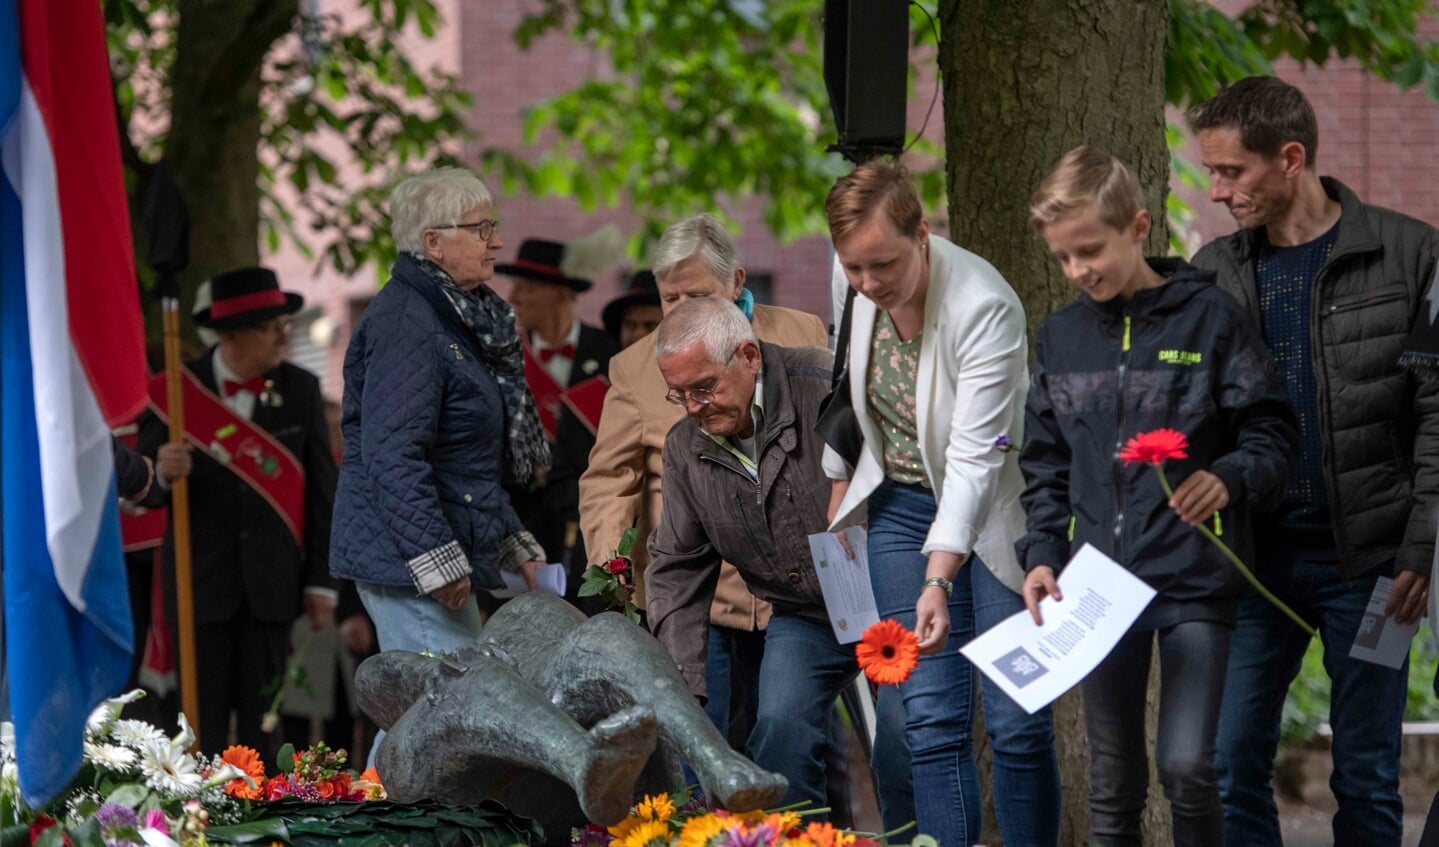 Bezoekers van de Dodenherdenking leggen bloemen op het oorlogsmonument in het Moussaultpark in Asten. (Foto: Hein van Bakel)